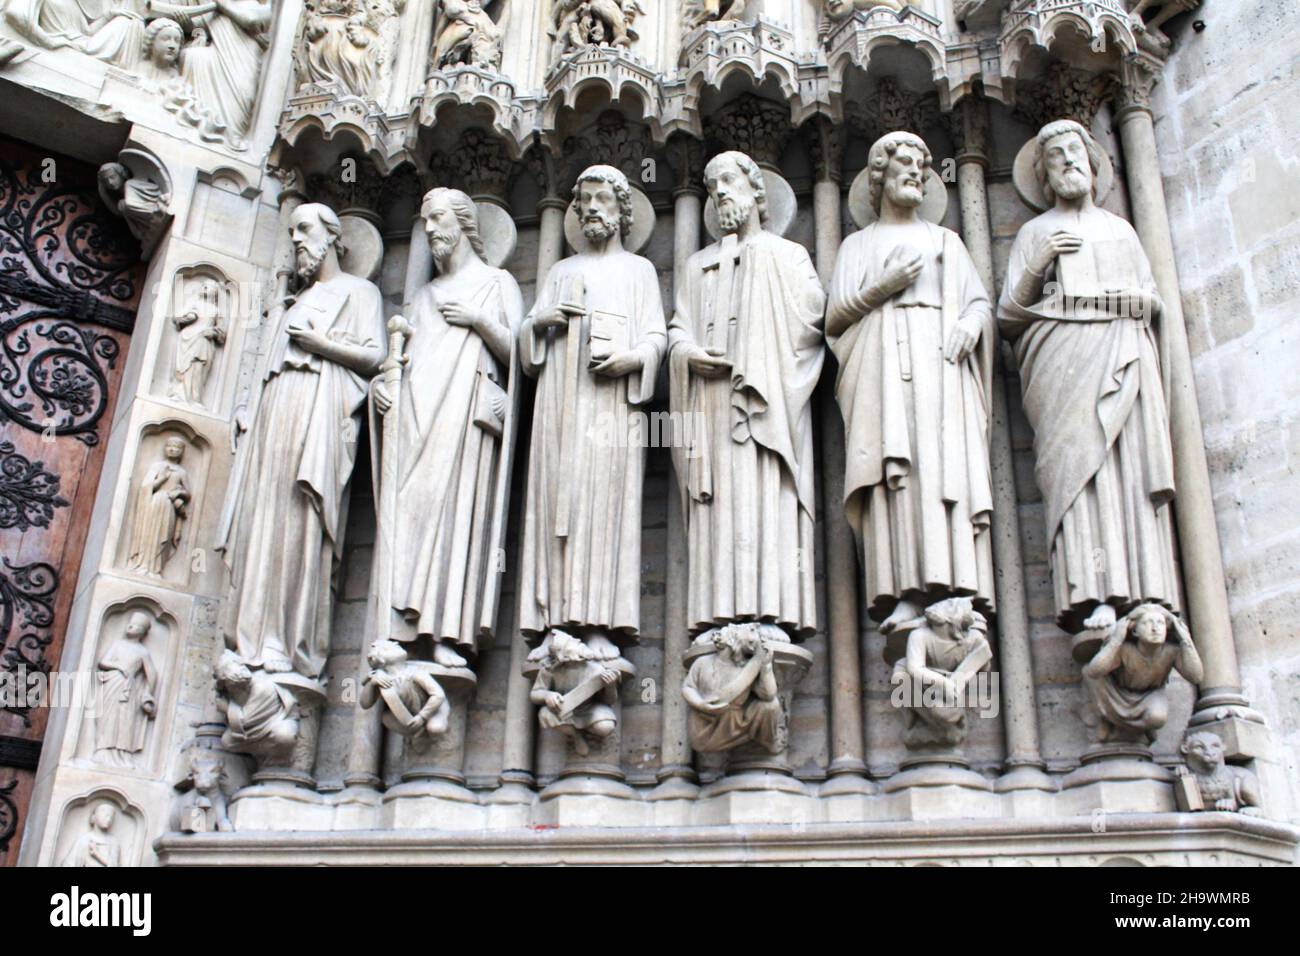 Historische Statuen der Heiligen Paul, James, Thomas, Philip, Jude und Matthew flankieren den Eingang an der façade der Kathedrale Notre Dame in Paris, Frankreich. Stockfoto